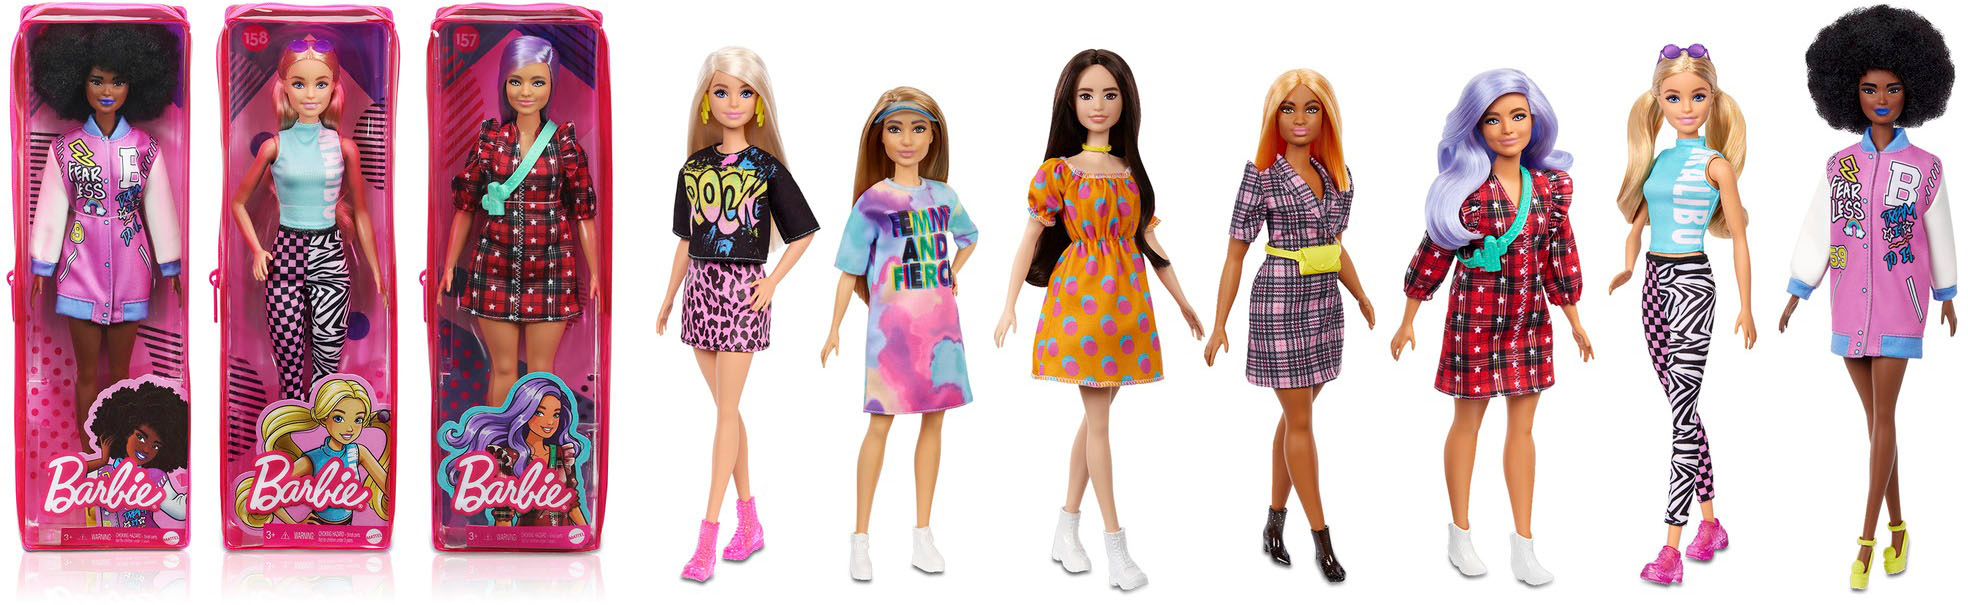 gemak golf Luik Barbie Fashionistas Doll Styles May Vary FBR37 - Best Buy